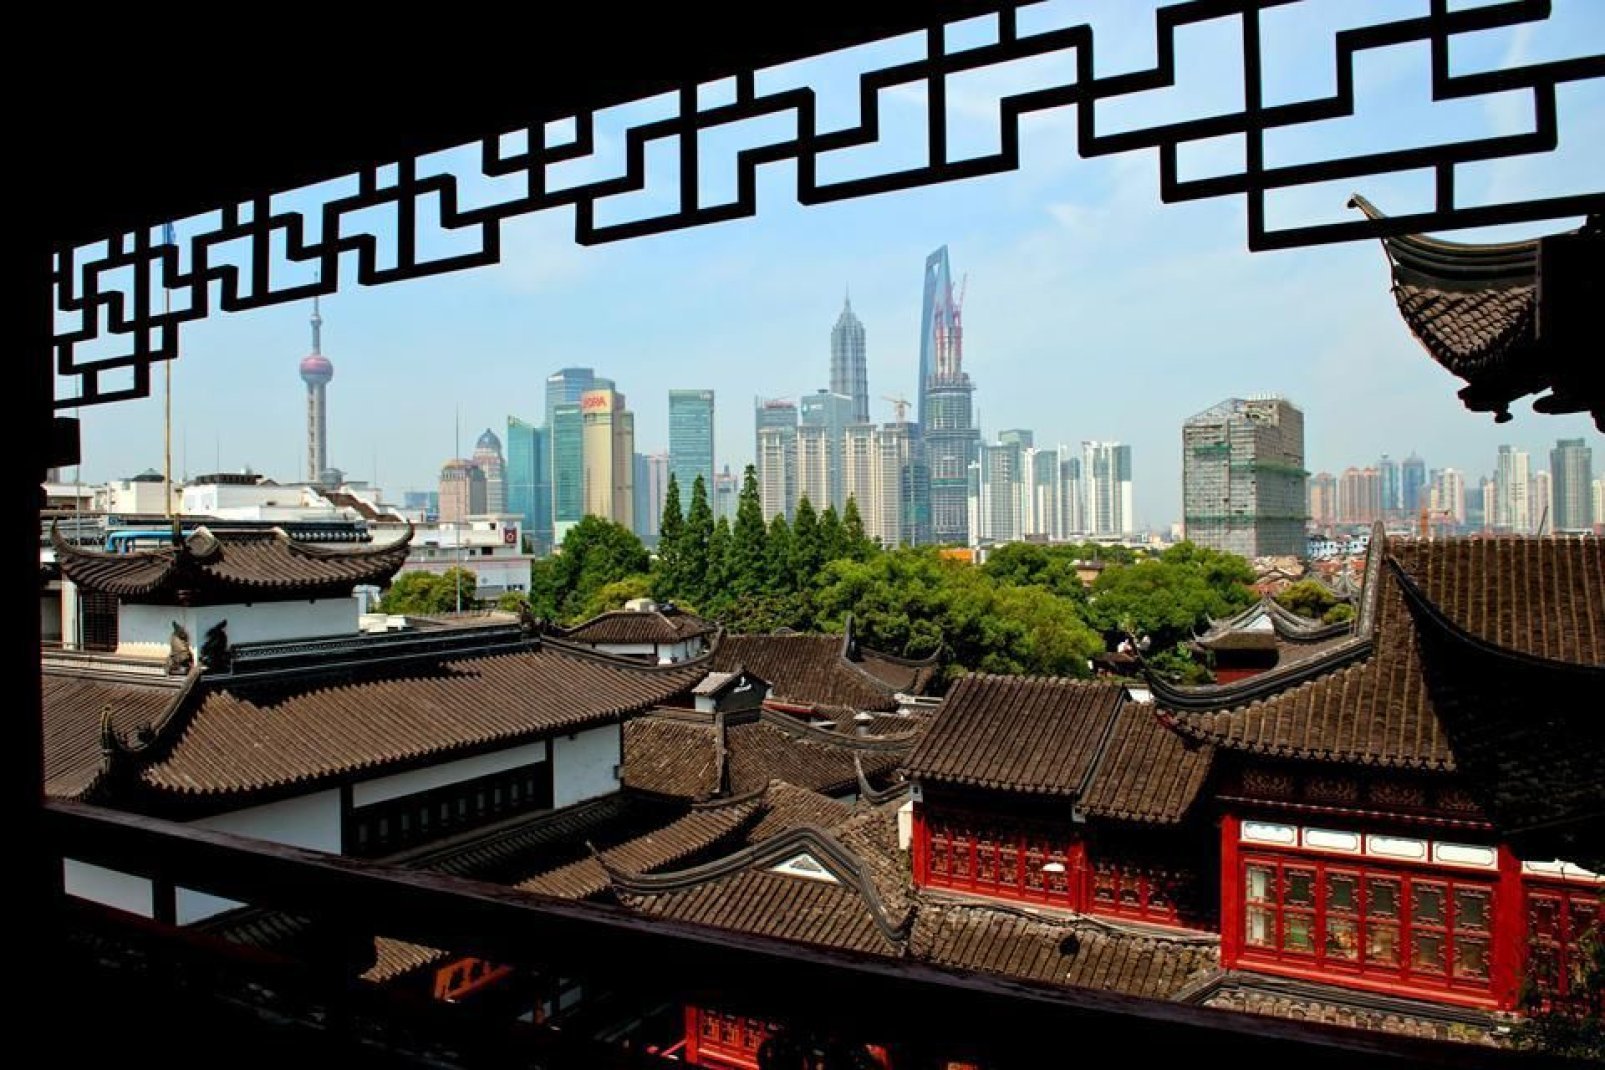 Vista dalla città vecchia sul quartiere moderno di Pudong.